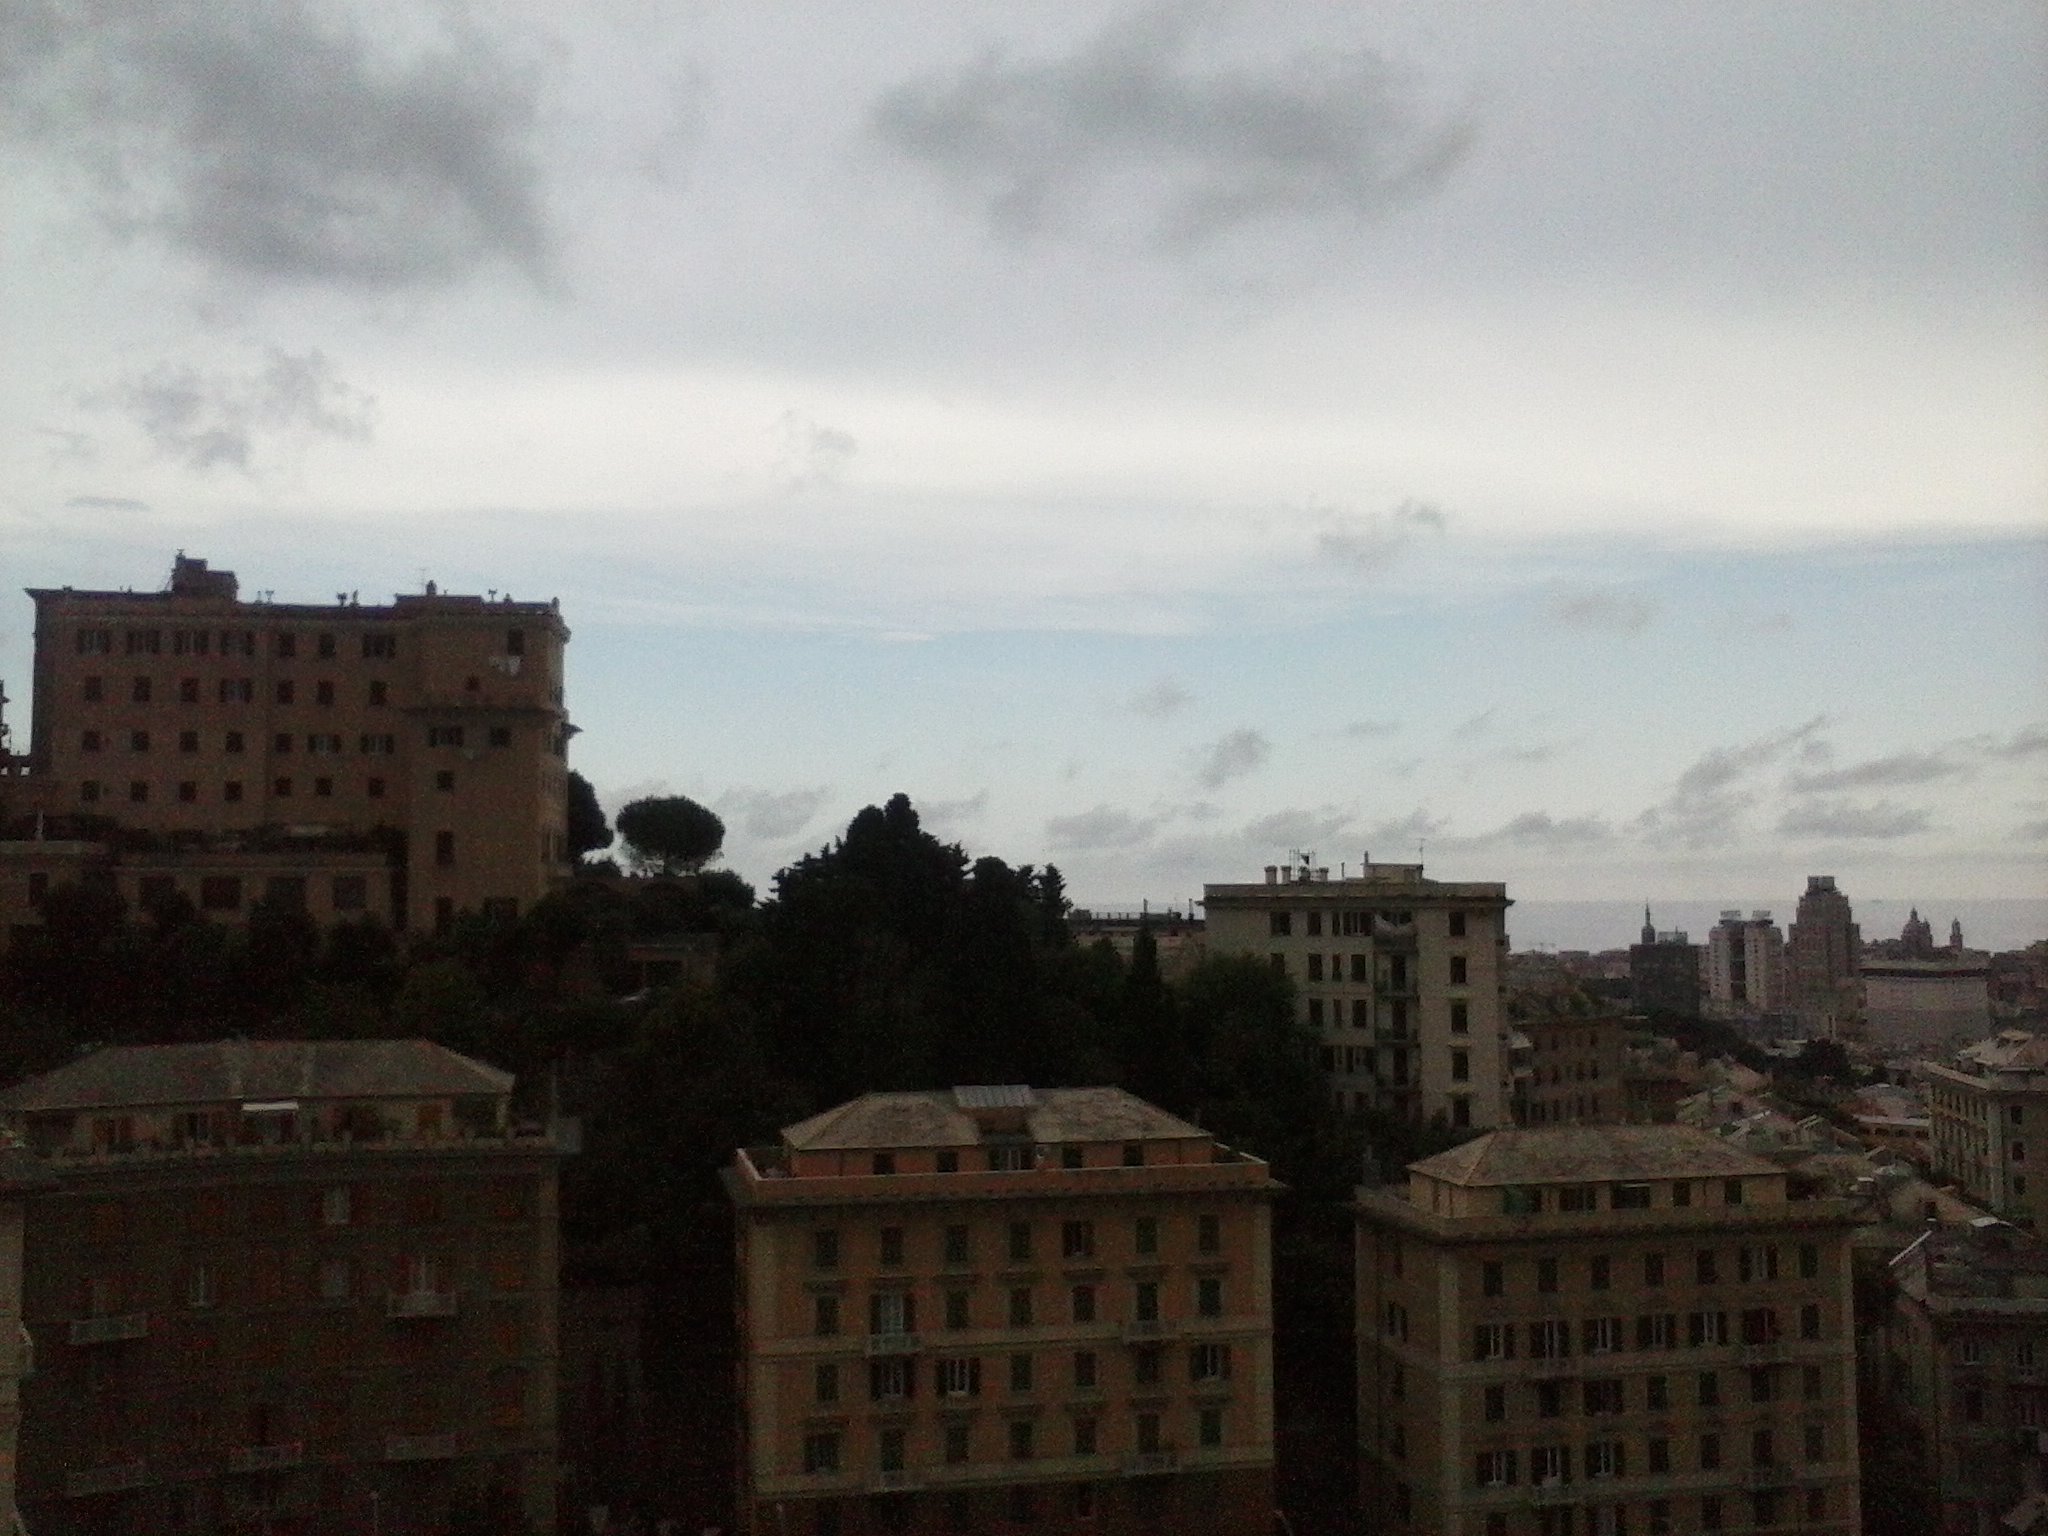 Vista di Castelletto - 23-07-2014 - 02